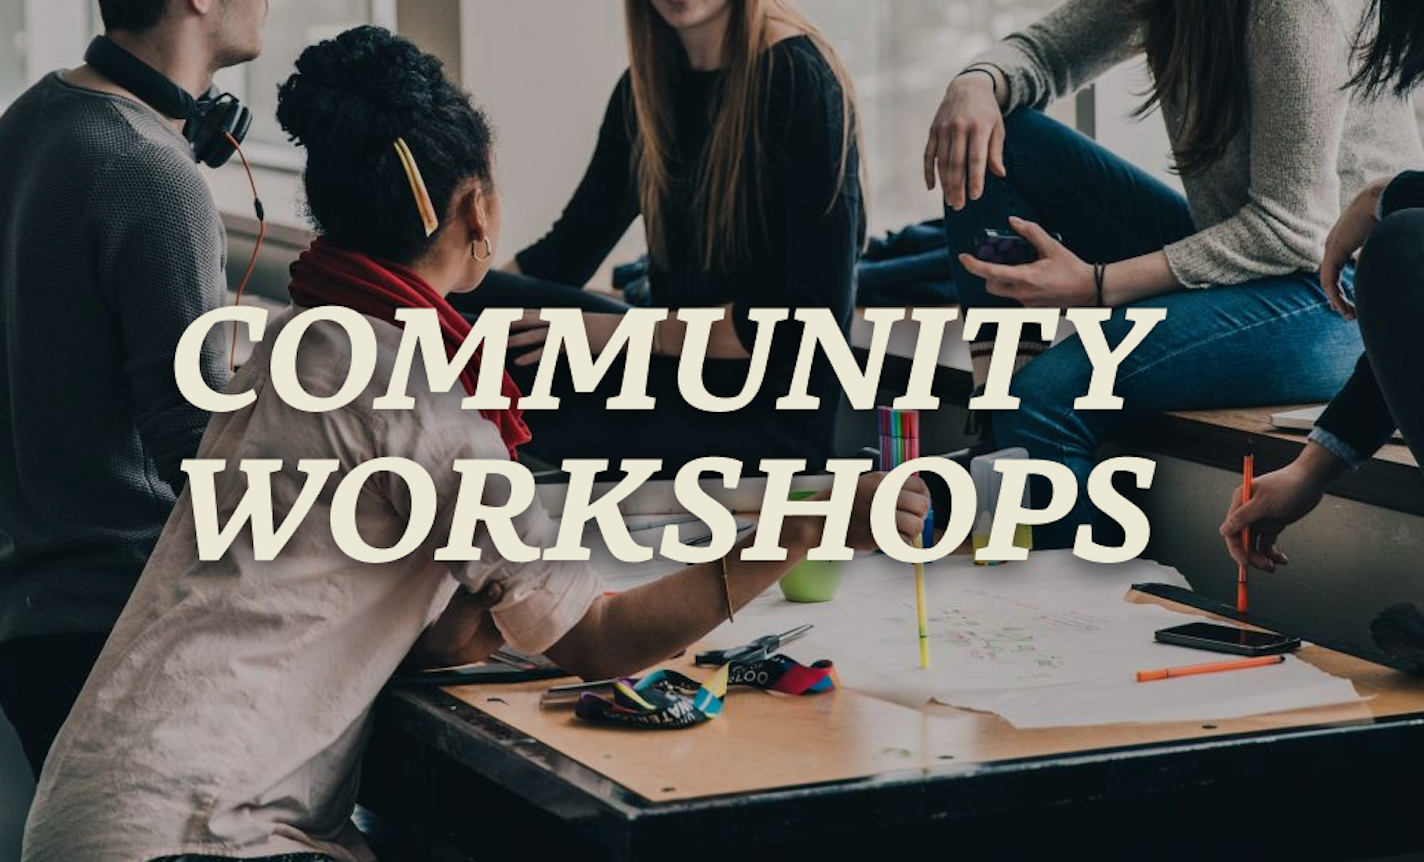 Friday: Community Workshops